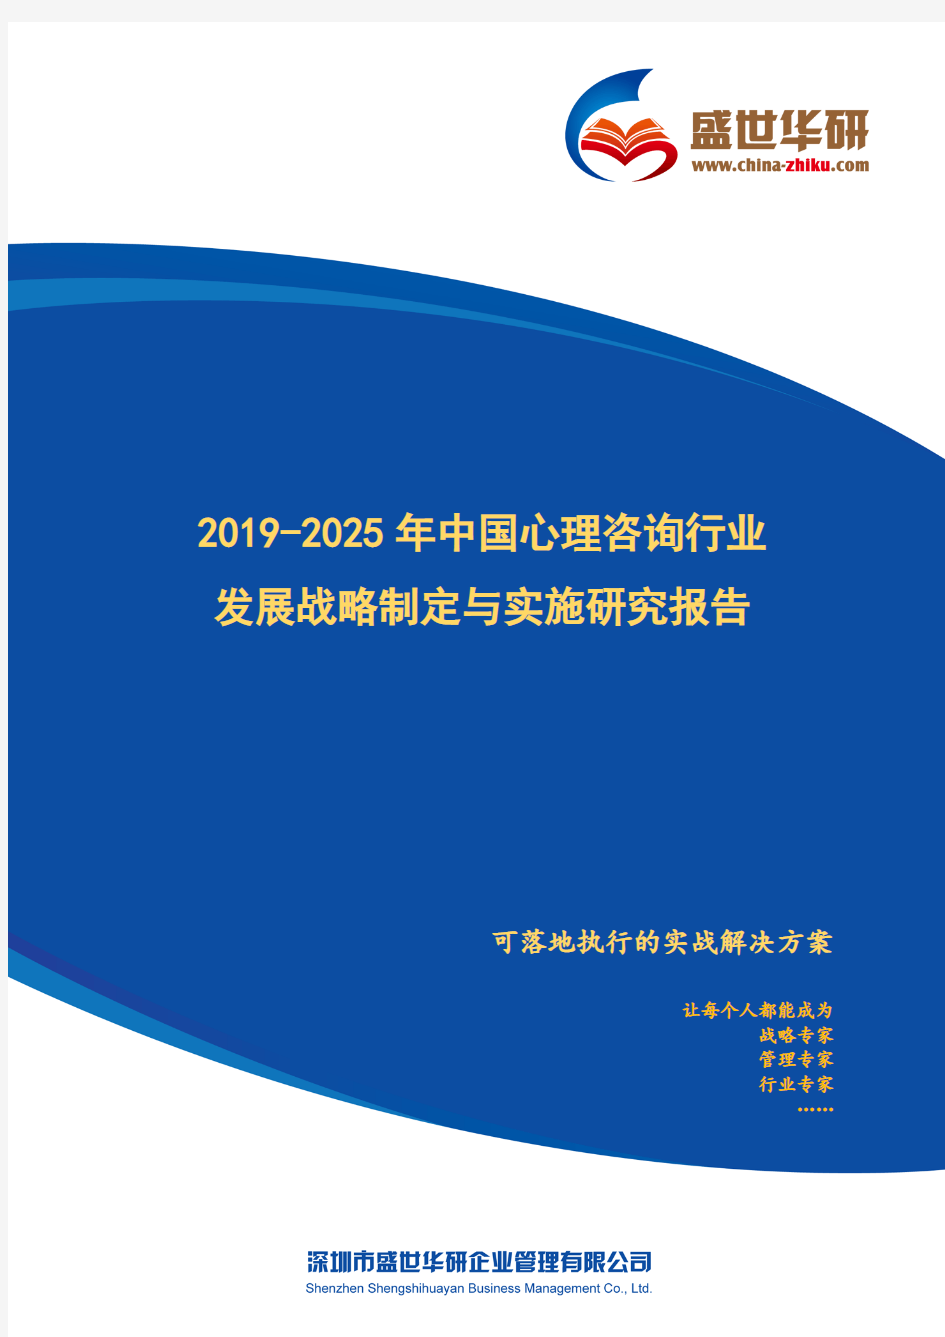 【完整版】2019-2025年中国心理咨询行业发展战略制定与实施研究报告